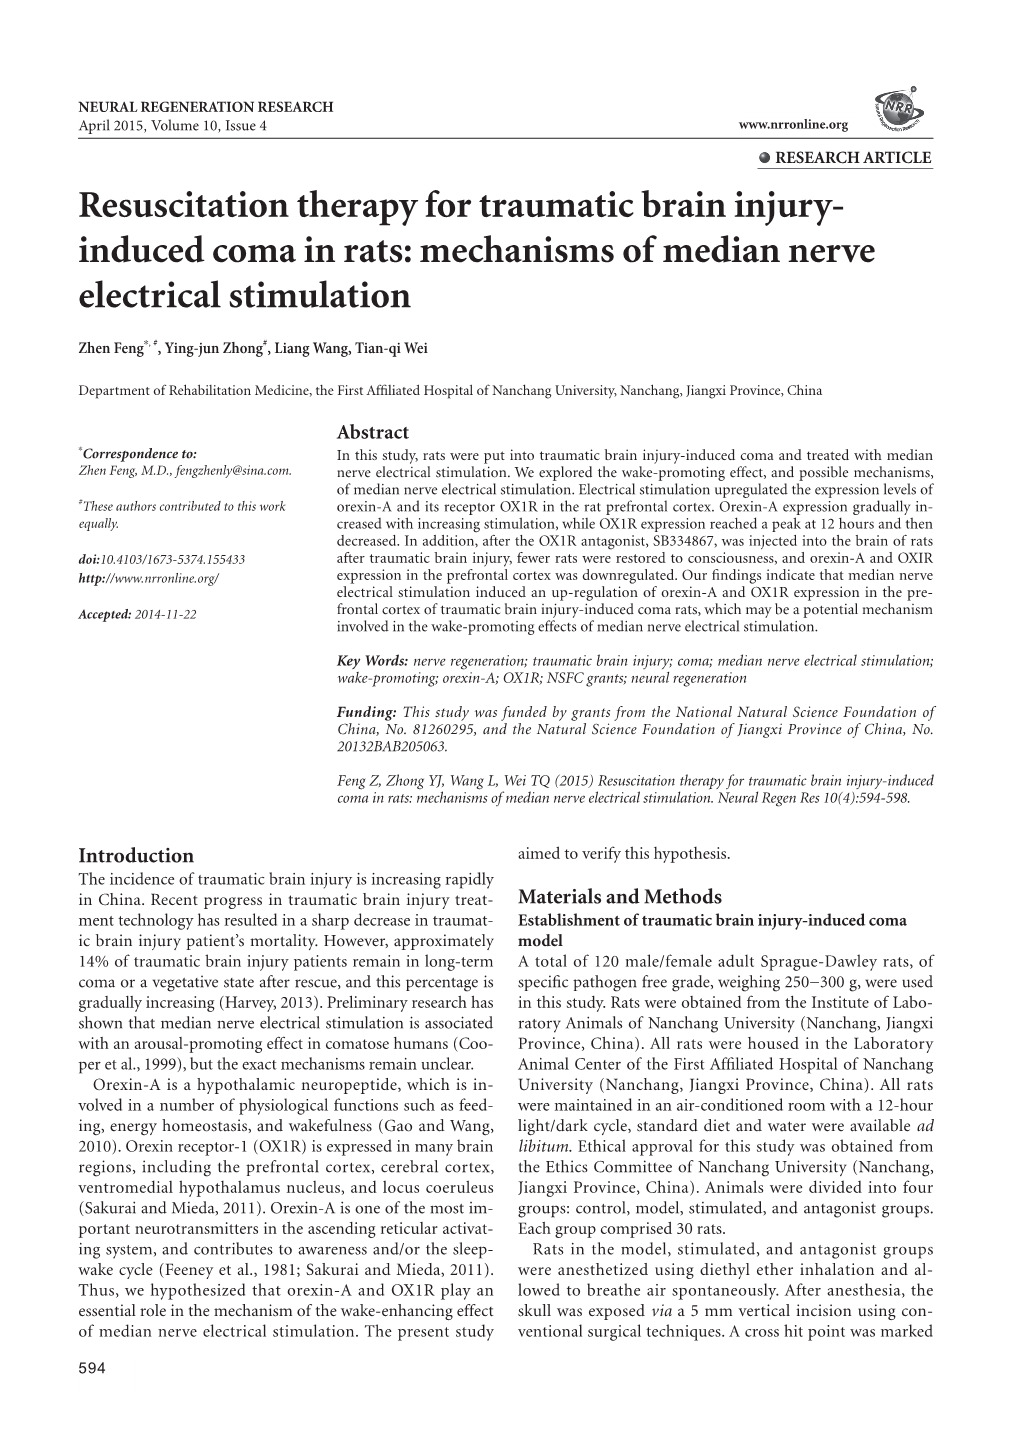 Mechanisms of Median Nerve Electrical Stimulation